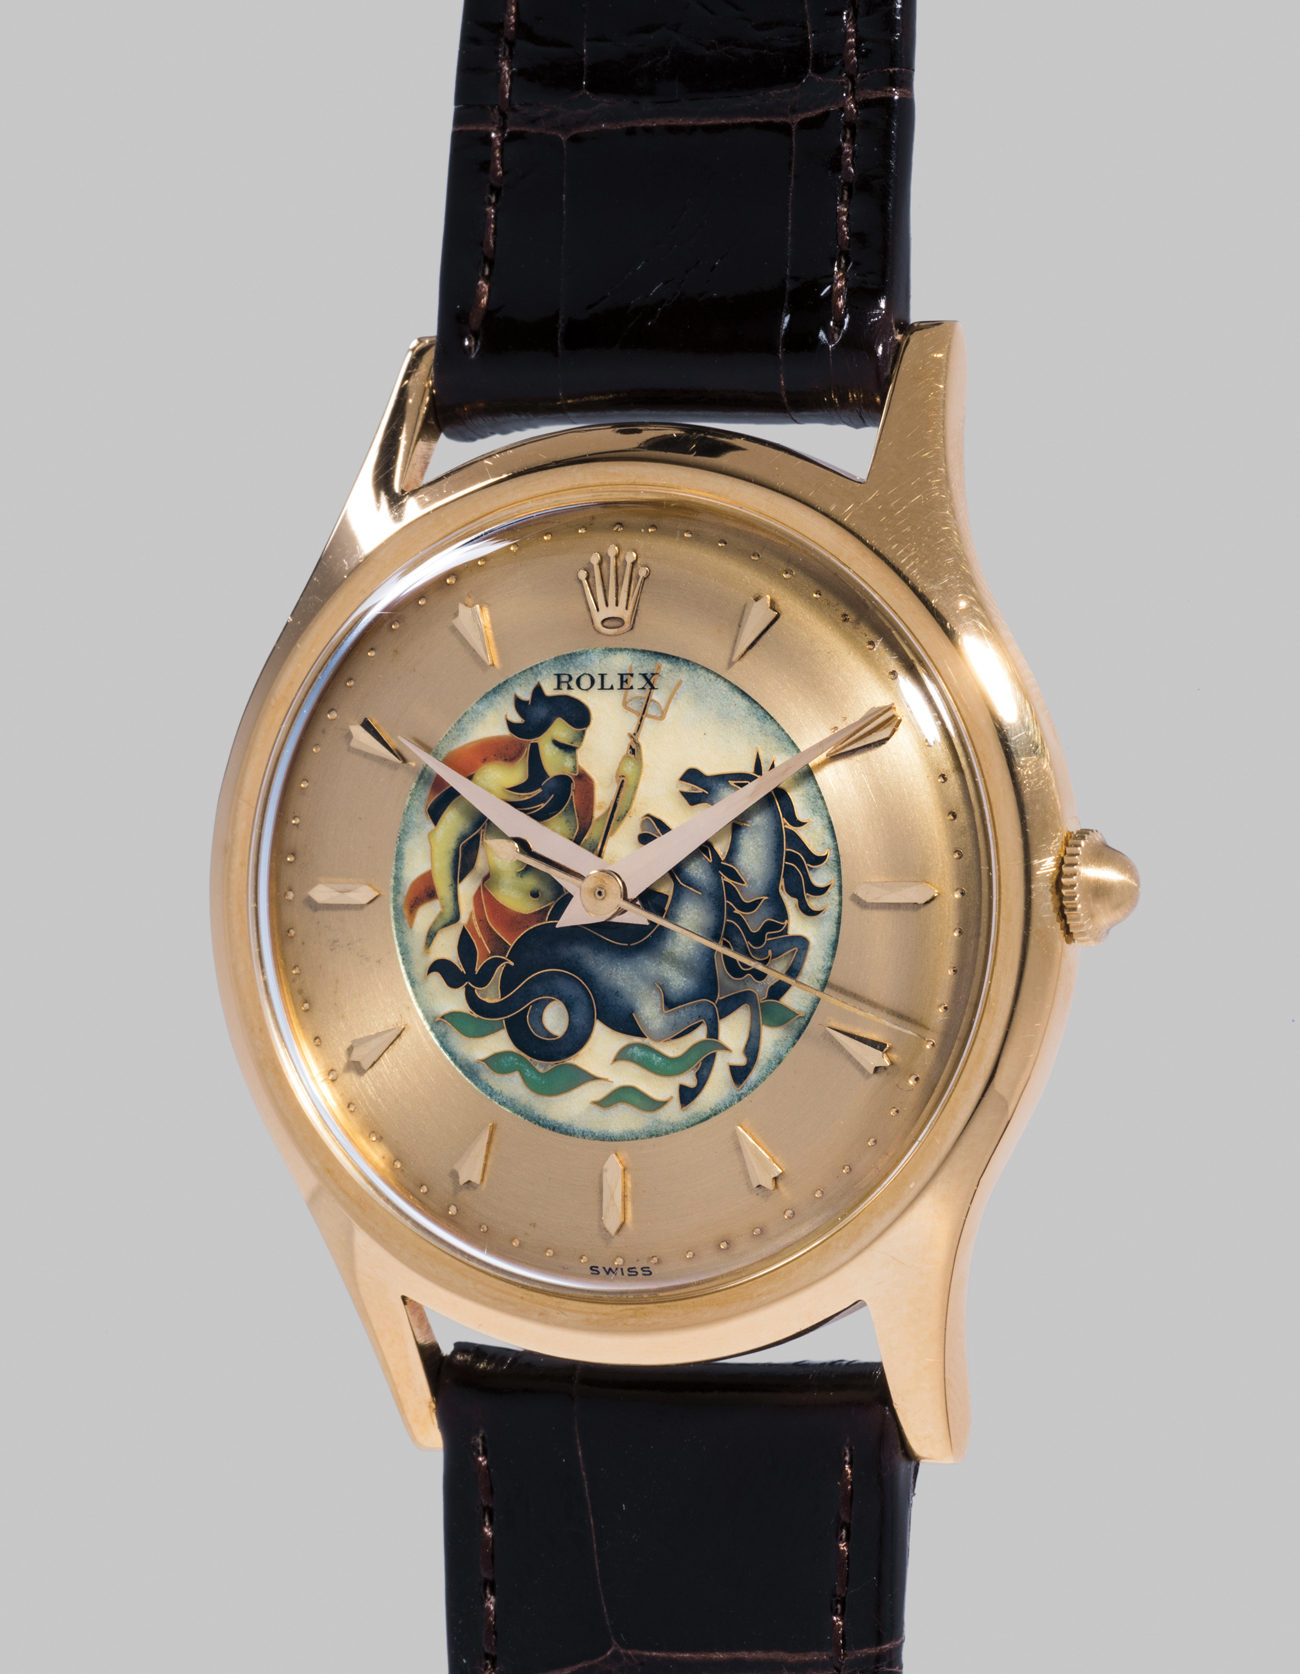 Rolex Ref. 8382 Neptune Редкие часы Rolex в желтом золоте с циферблатом, выполненным в технике перегородчатой эмали, один из двух референсов 8382 с эмалевым циферблатом с изображением Нептуна, рассекающего море. Оценочная стоимость: CHF 300&ndash;600 тыс.
